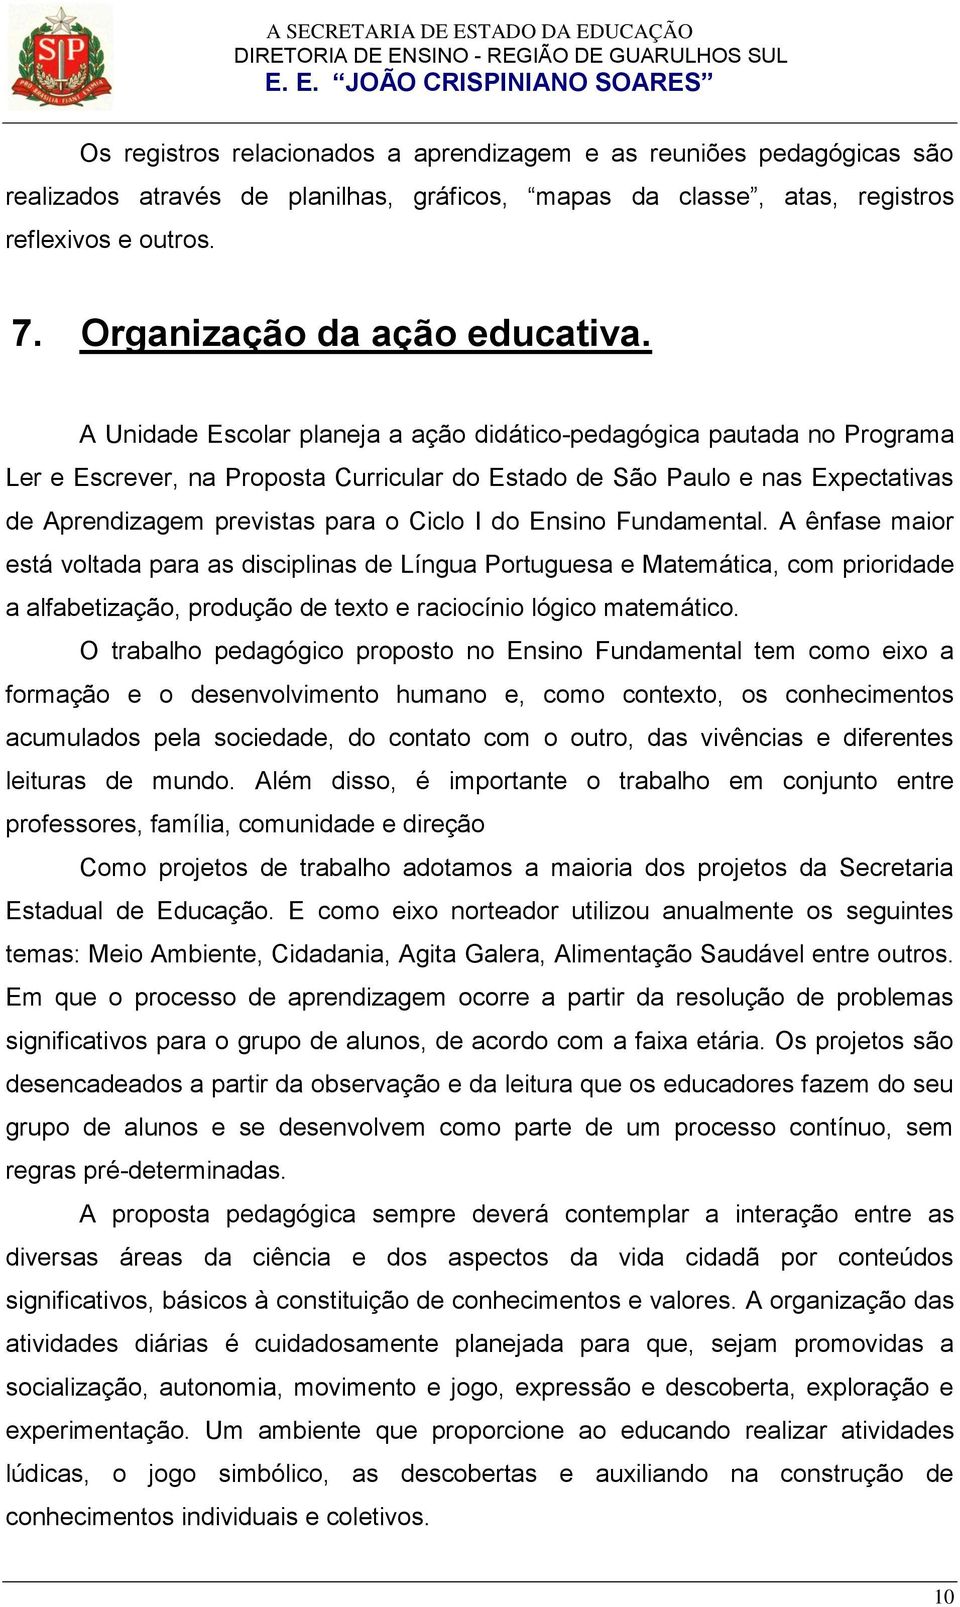 Ensino Fundamental. A ênfase maior está voltada para as disciplinas de Língua Portuguesa e Matemática, com prioridade a alfabetização, produção de teto e raciocínio lógico matemático.